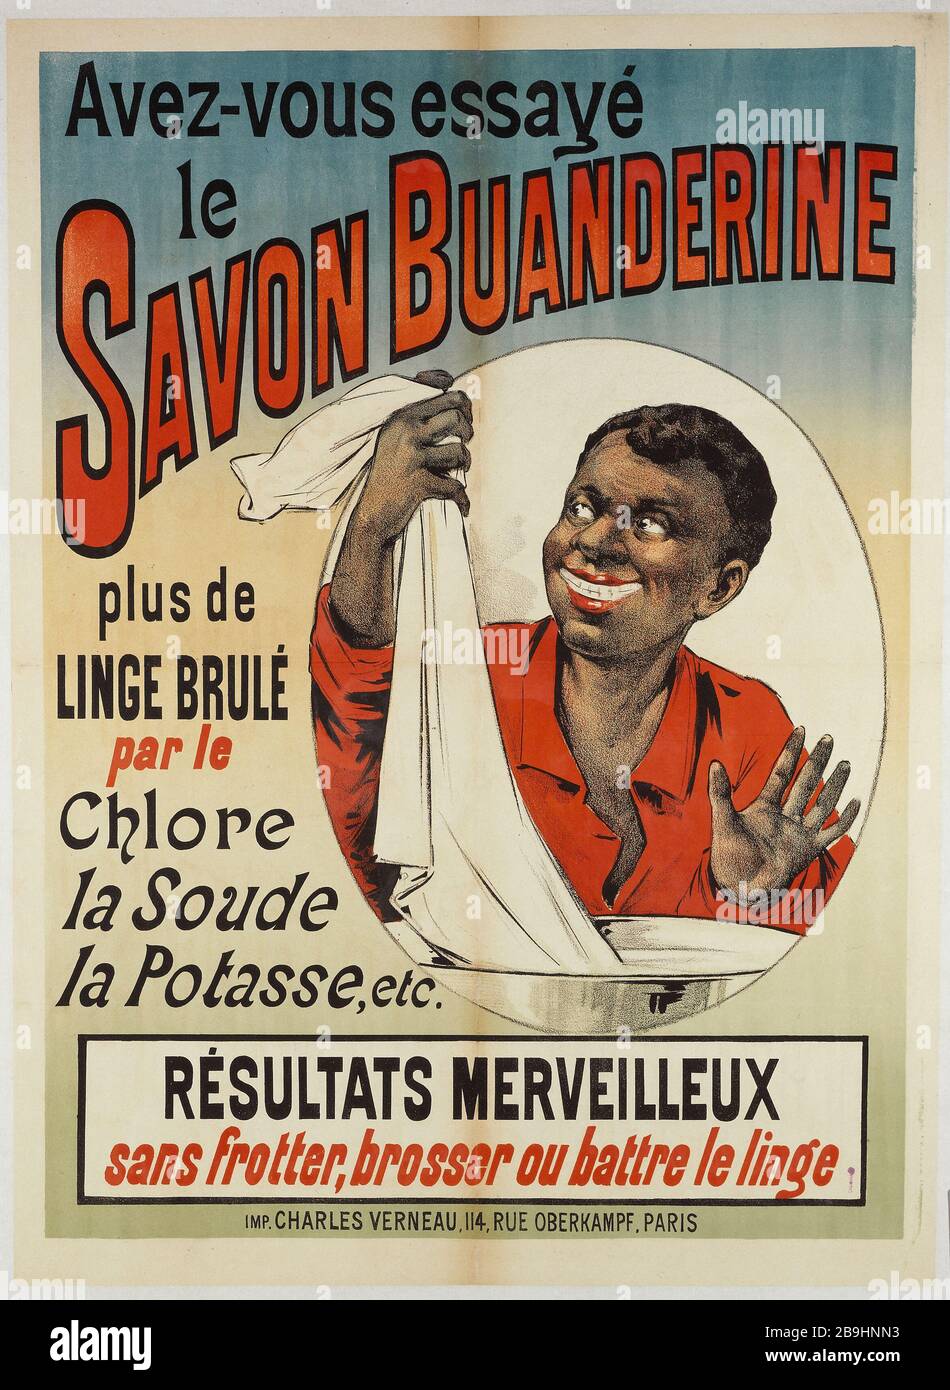 HAVE YOU TRIED THE SOAP BUANDERINE Imprimerie Charles Verneau. 'Avez-Vous Essayé le Savon Buanderine'. Affiche. Lithographie couleur. Paris, musée Carnavalet. Stock Photo